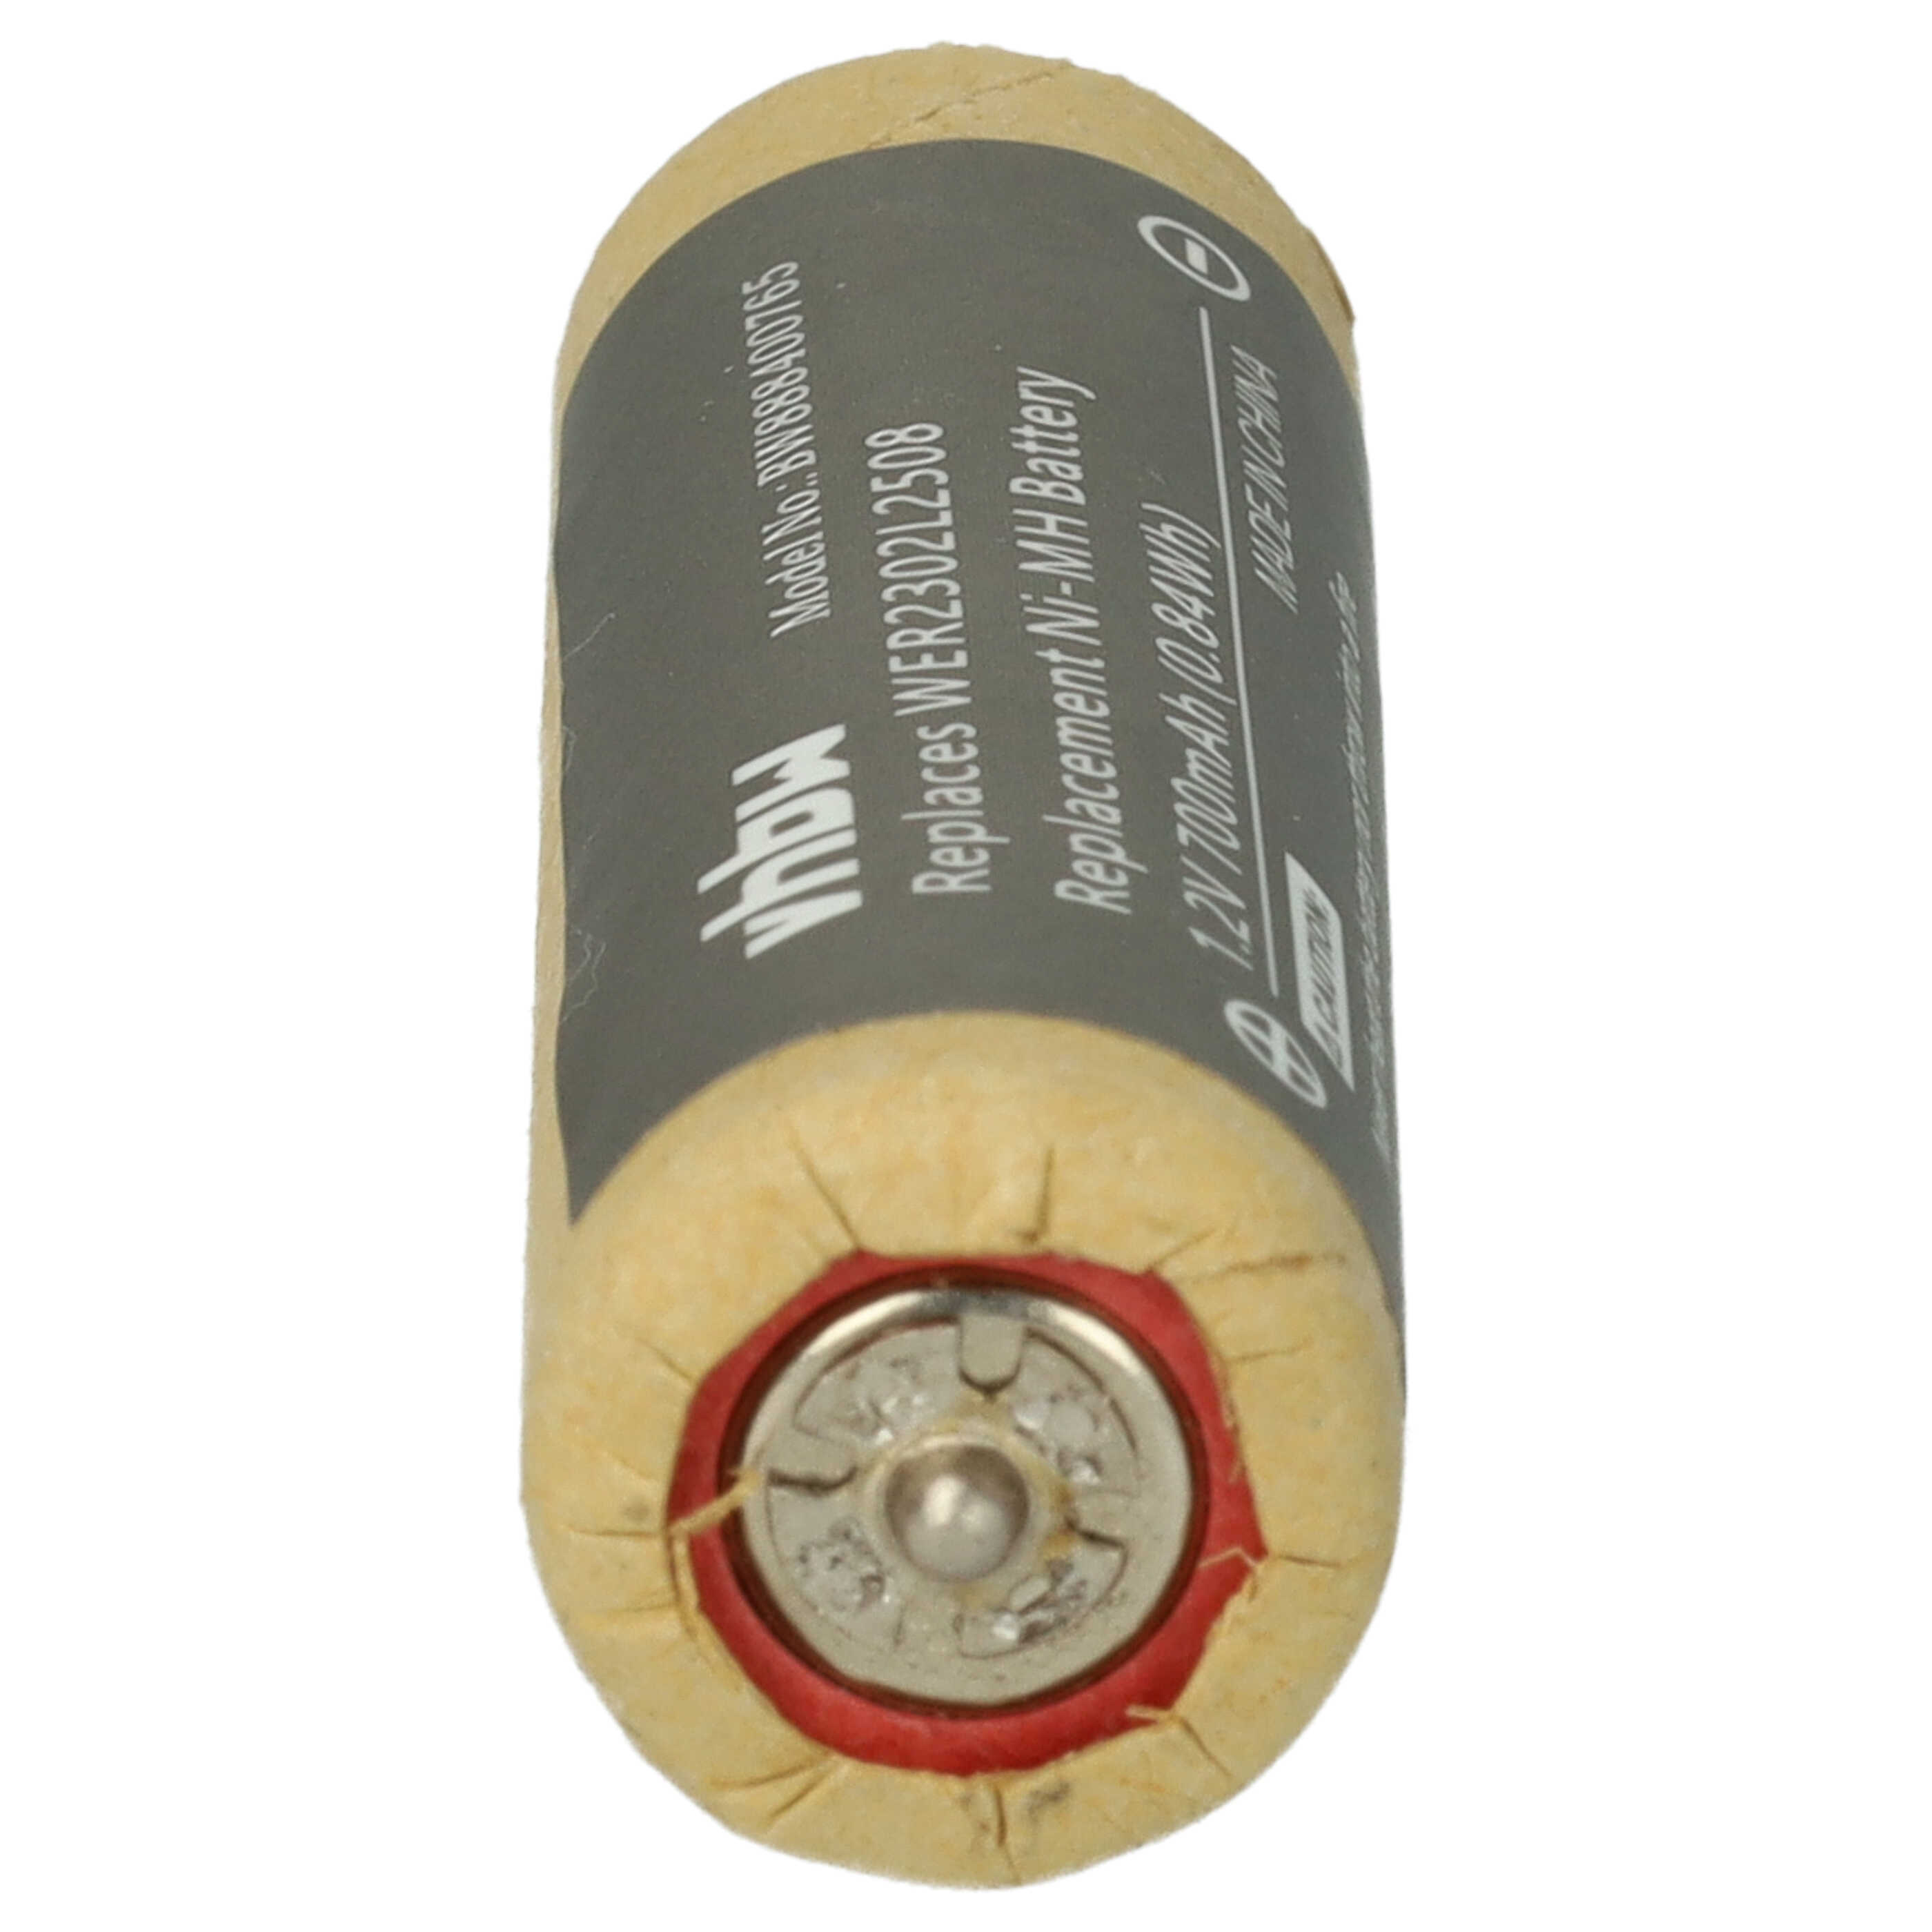 Batterie remplace Panasonic WER2302L2508 pour rasoir électrique - 700mAh 1,2V NiMH